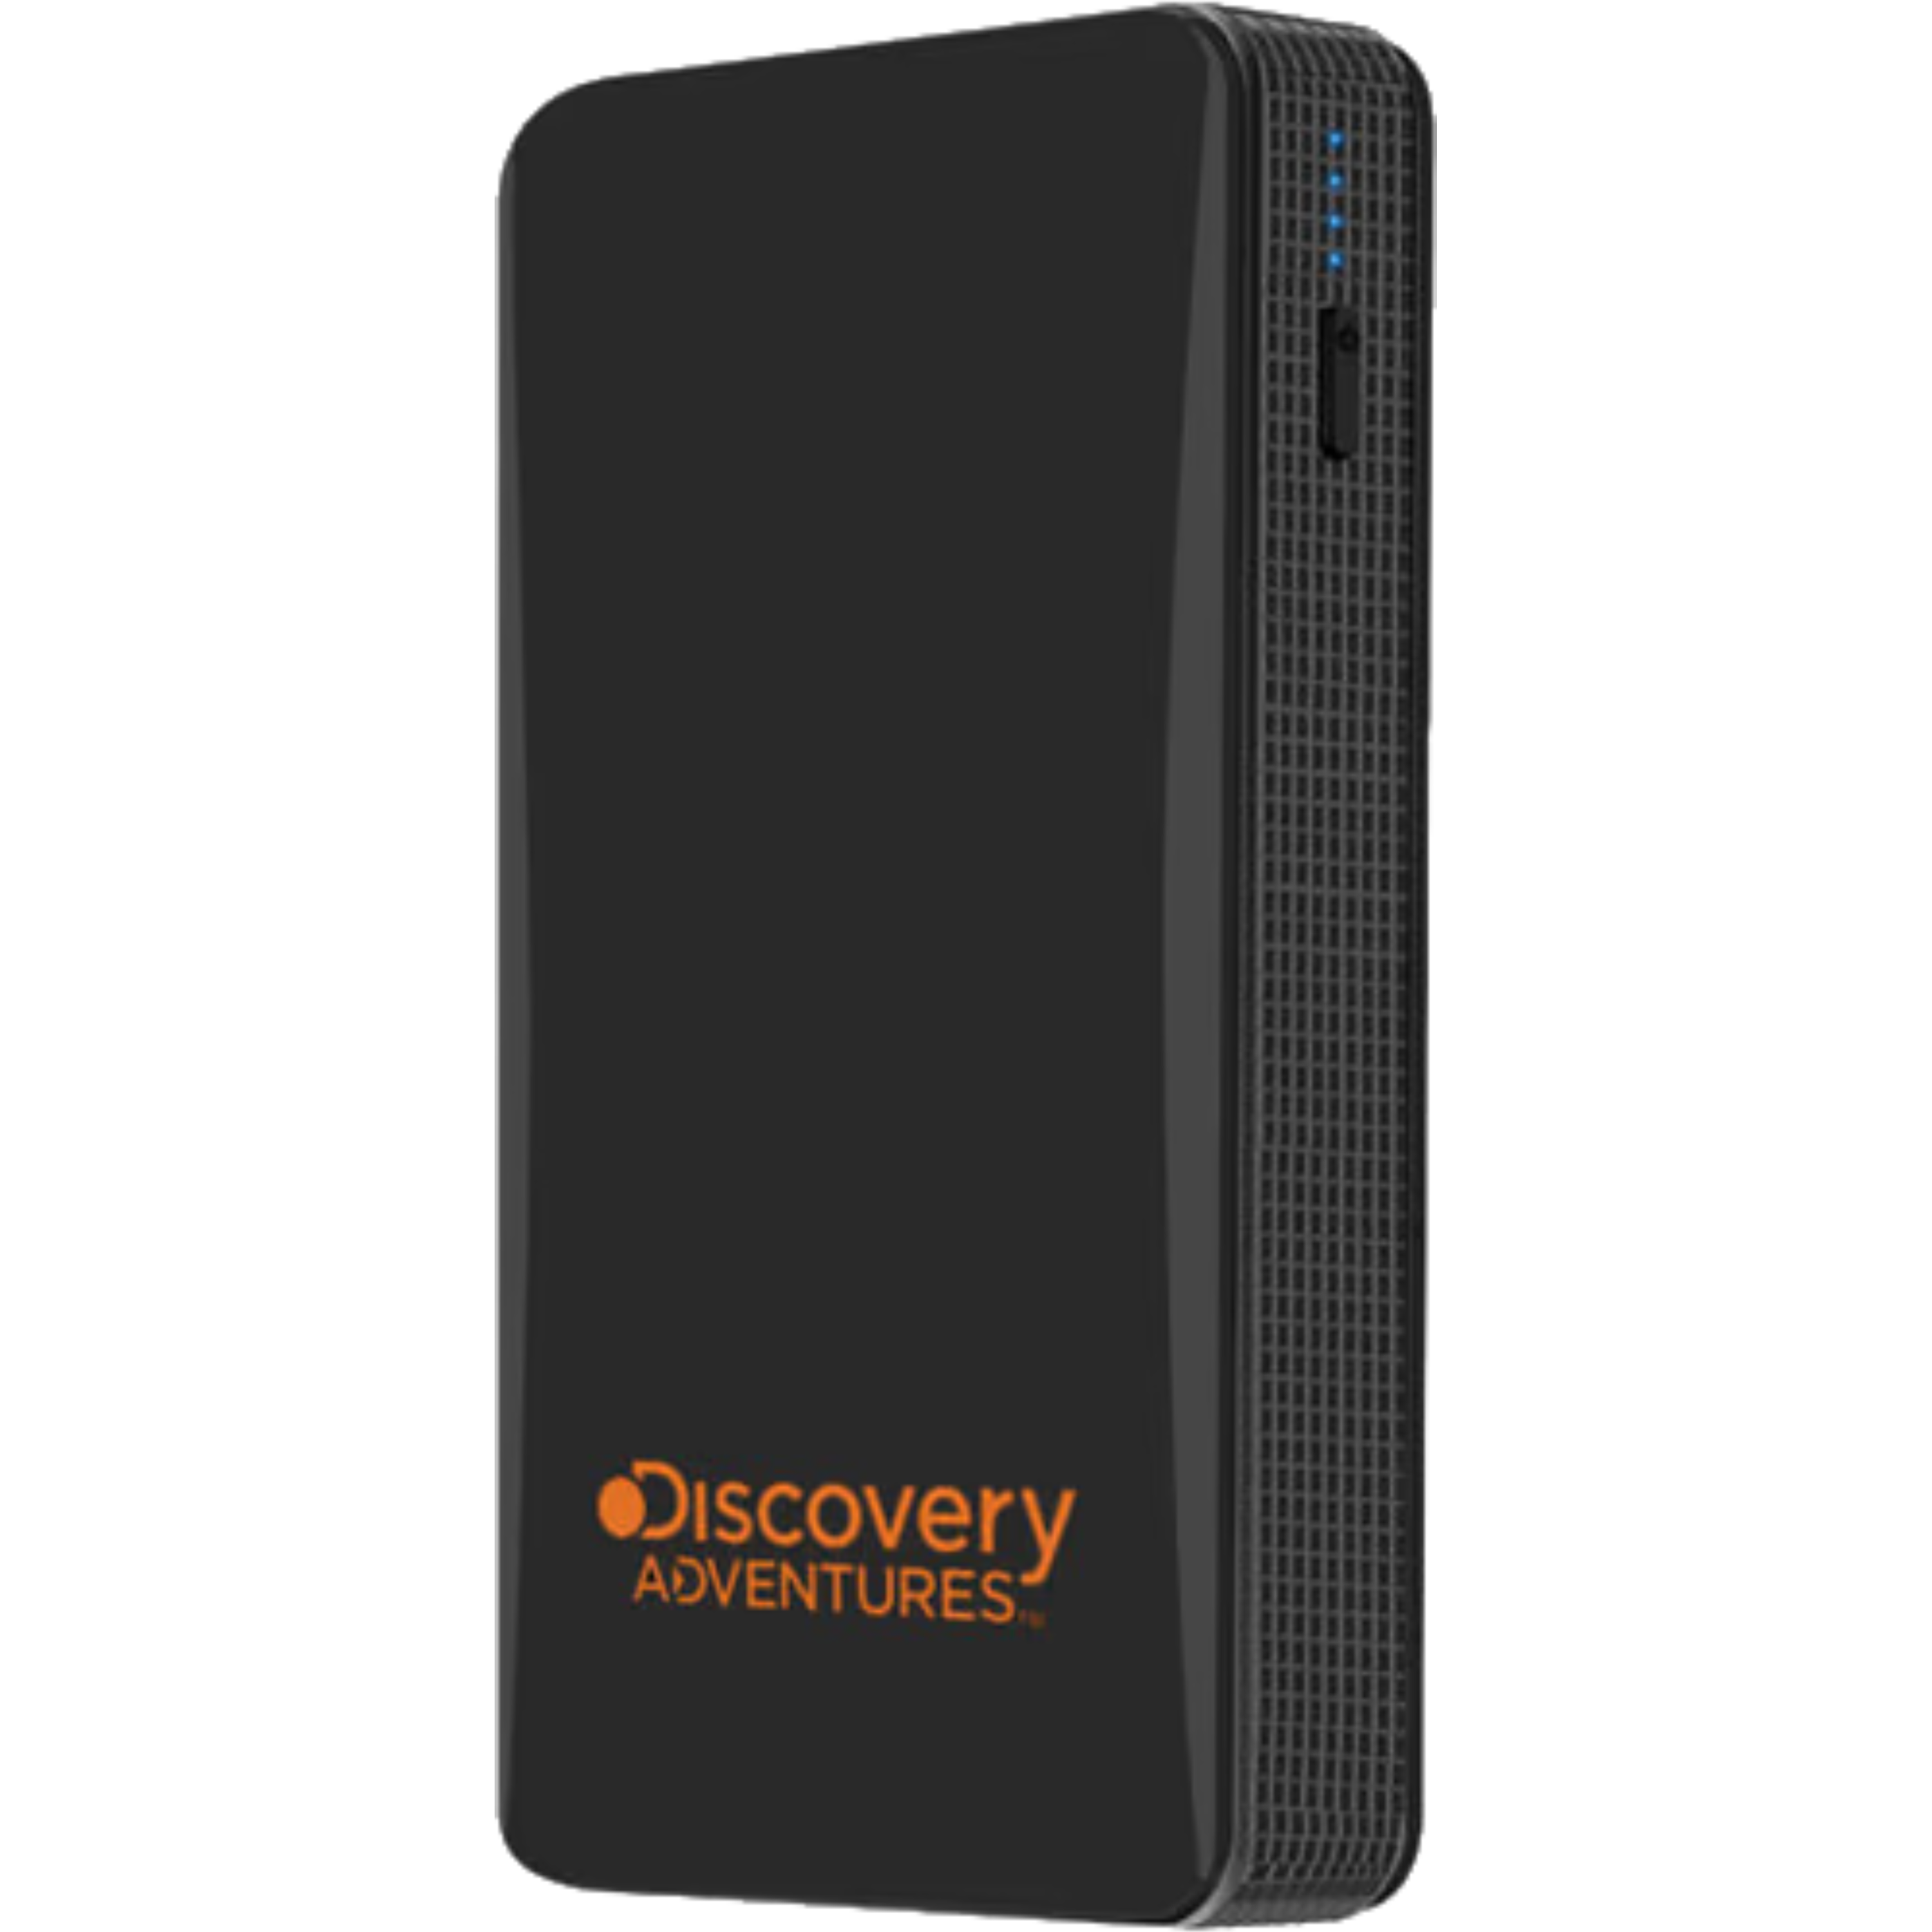 בוסטר טעינה לרכב Discovery Adventures DS 560 8000mAh - צבע שחור